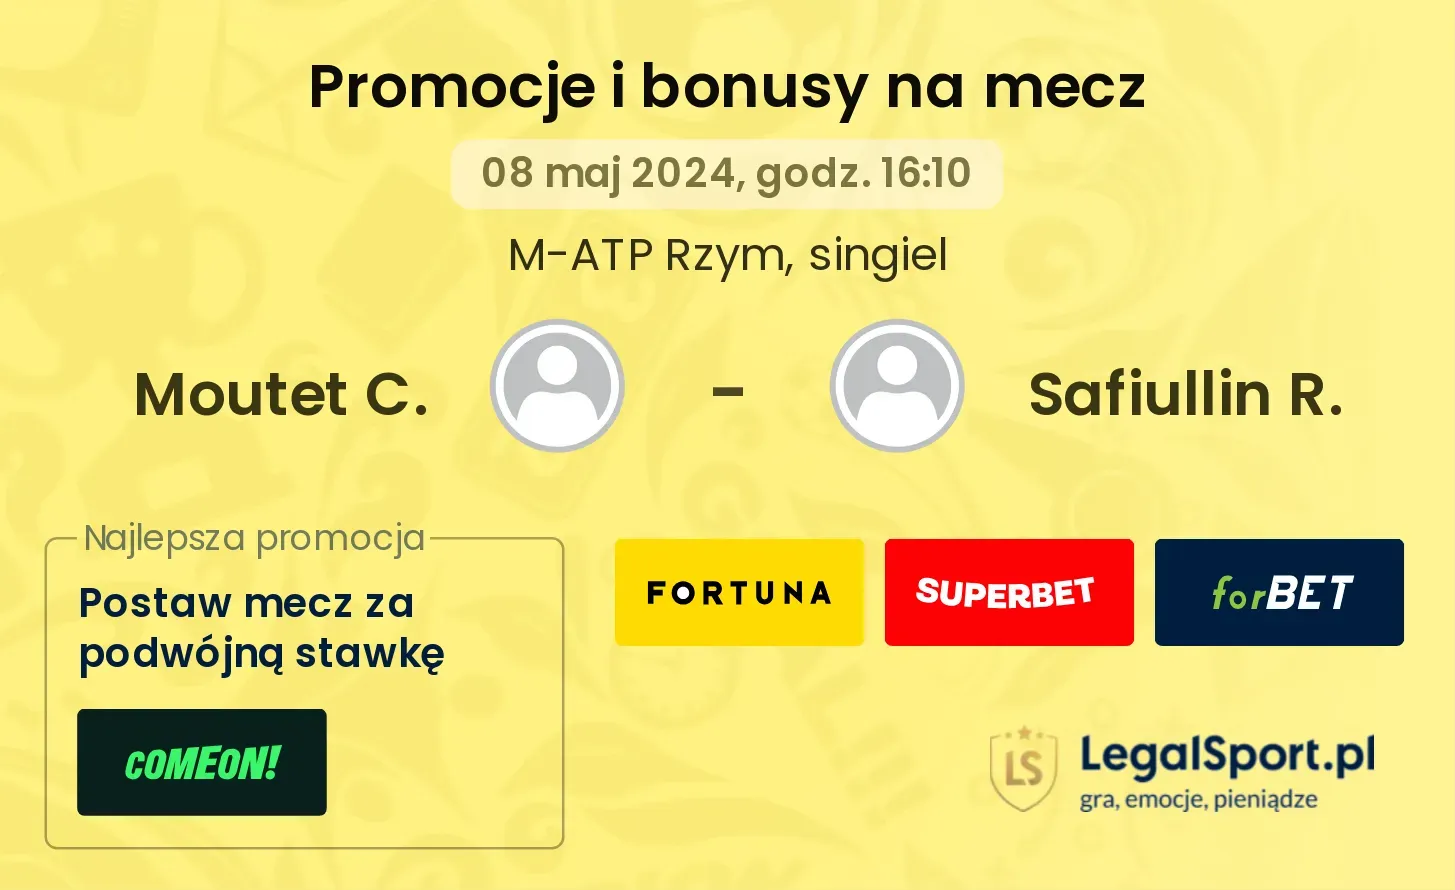 Moutet C. - Safiullin R. promocje bonusy na mecz